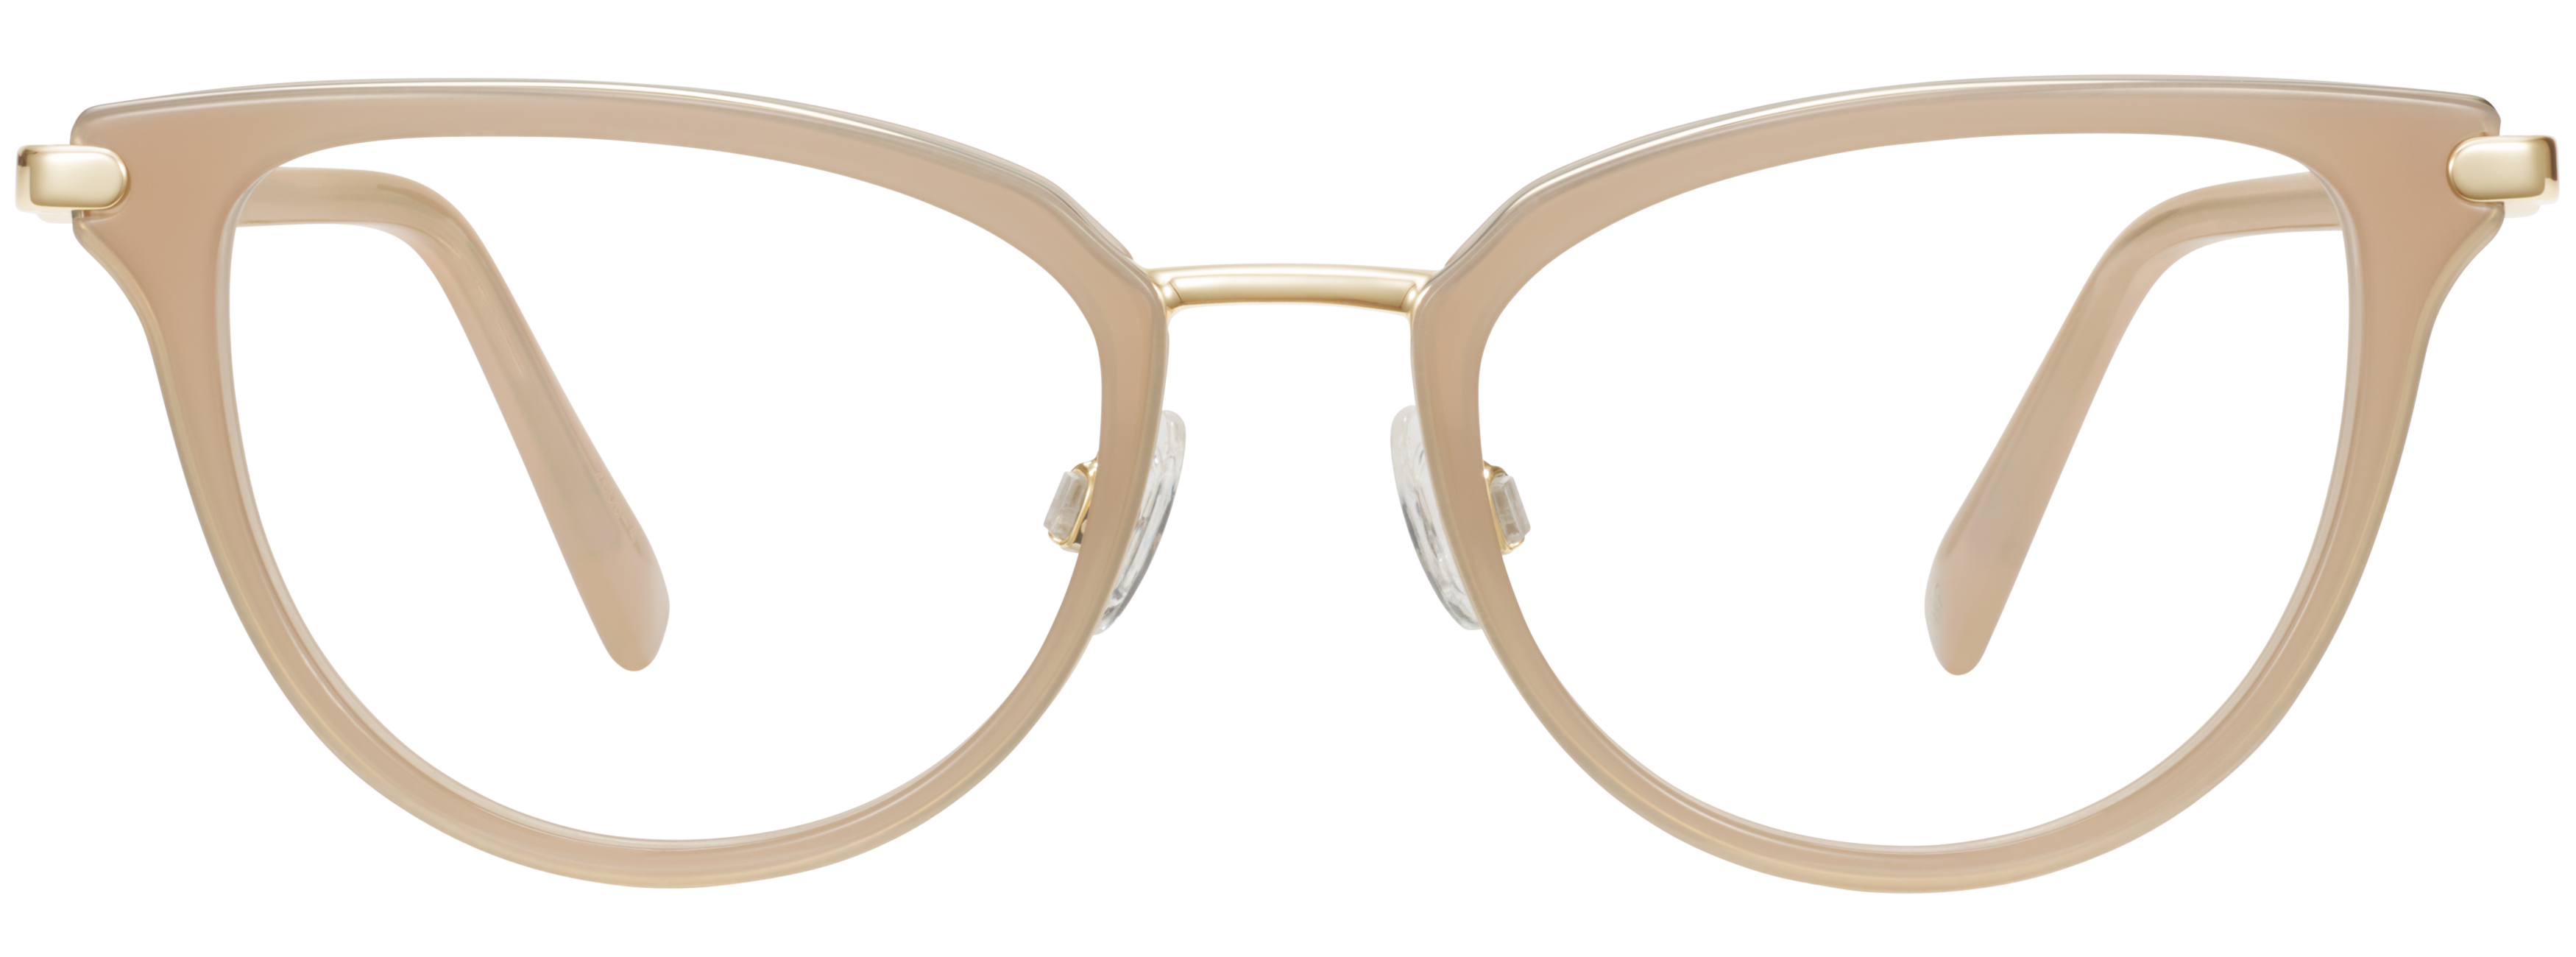 Odnos šunka sprej  Toula Eyeglasses in Praline with Riesling | Warby Parker